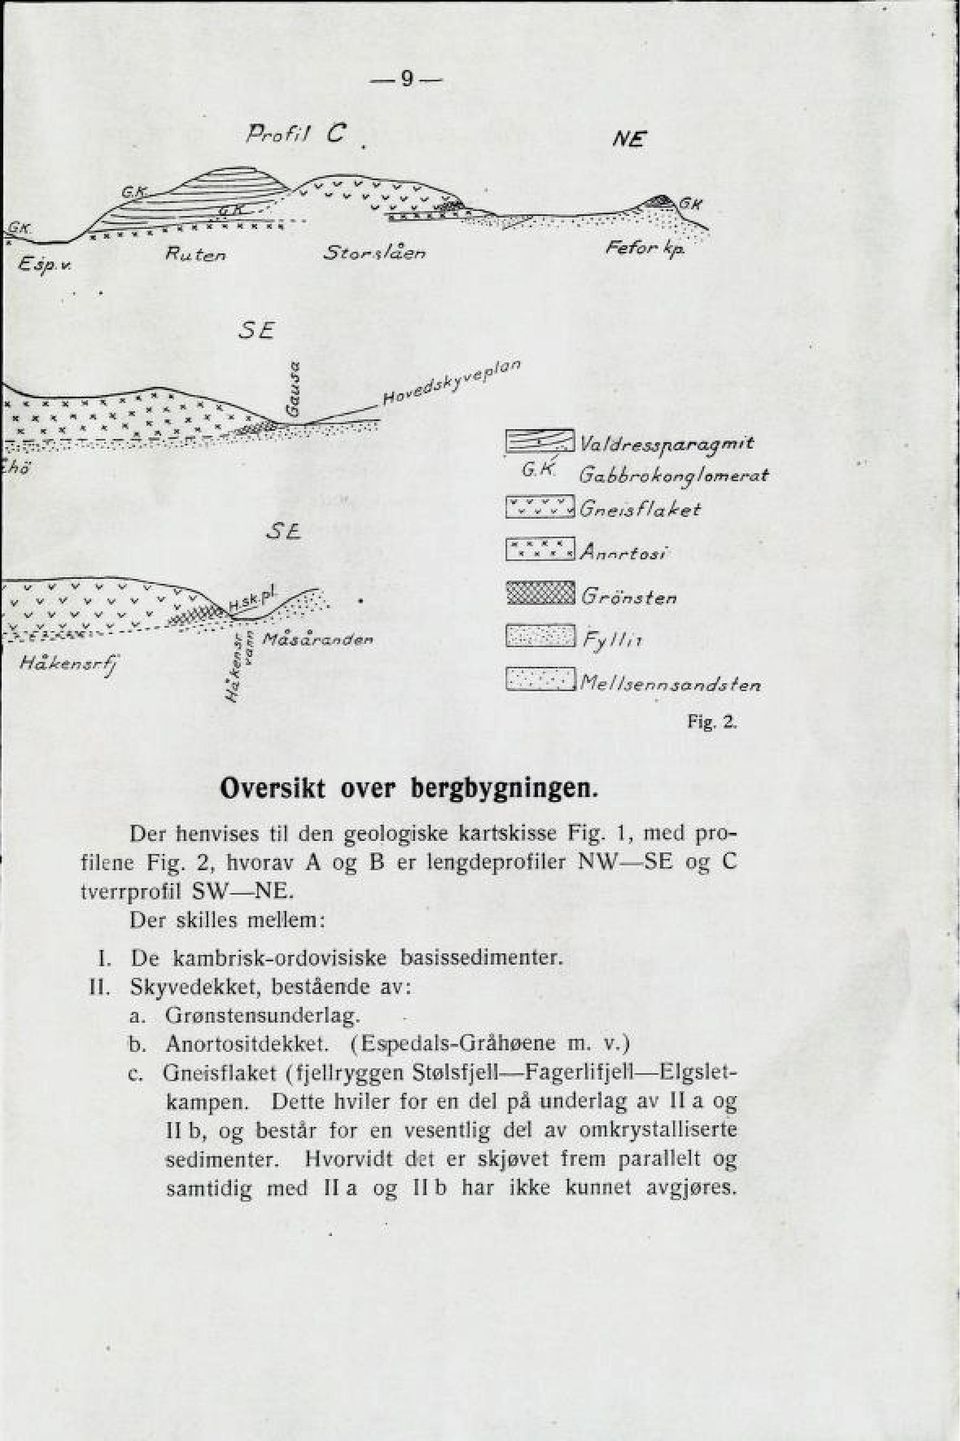 Skyvedekket, bestående av: a. Grønstensunderlag. b. Anortositdekket. (Espedals-Gråhøene m. v.) c. Gneisflaket (fjellryggen Stølsfjell Fagerlifjell Elgslet kampen.